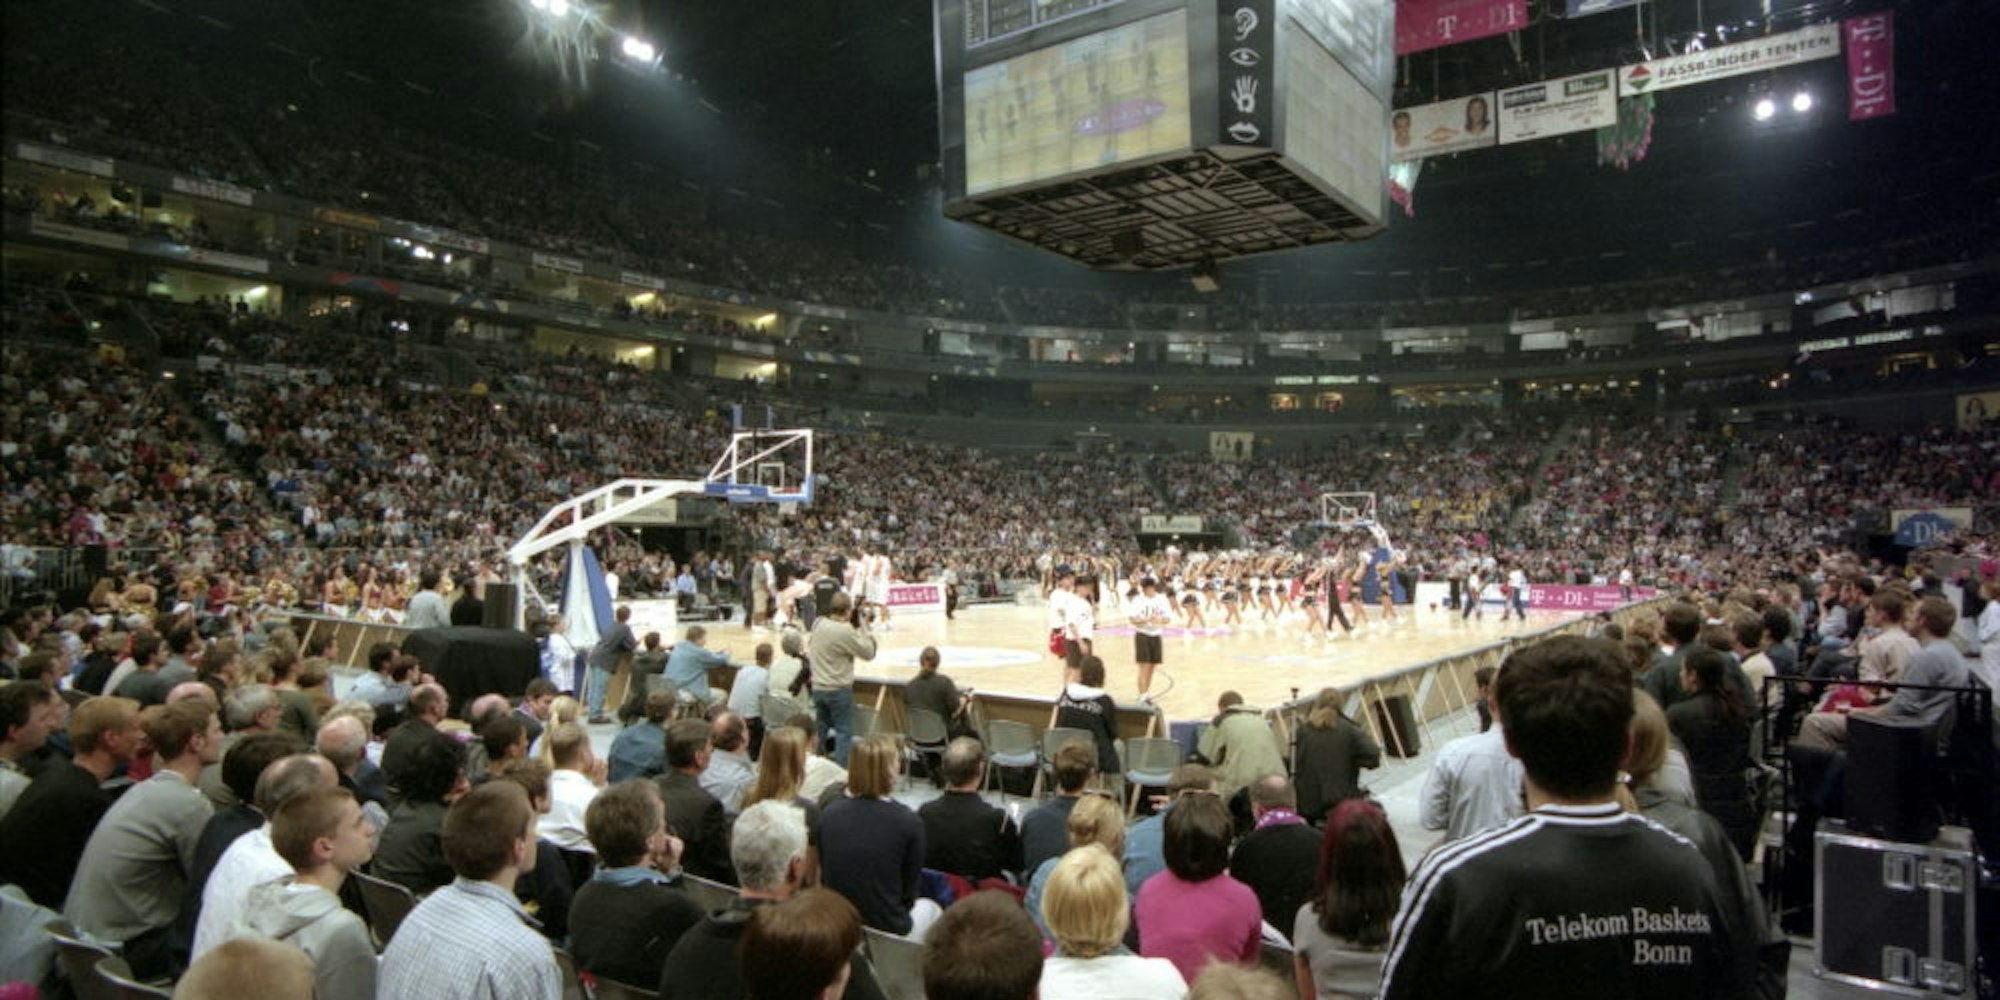 Ein imposanter Anblick: Mit 18 500 Zuschauern war die Köln-Arena beim Duell Bonn/Berlin im April 2000 ausverkauft.